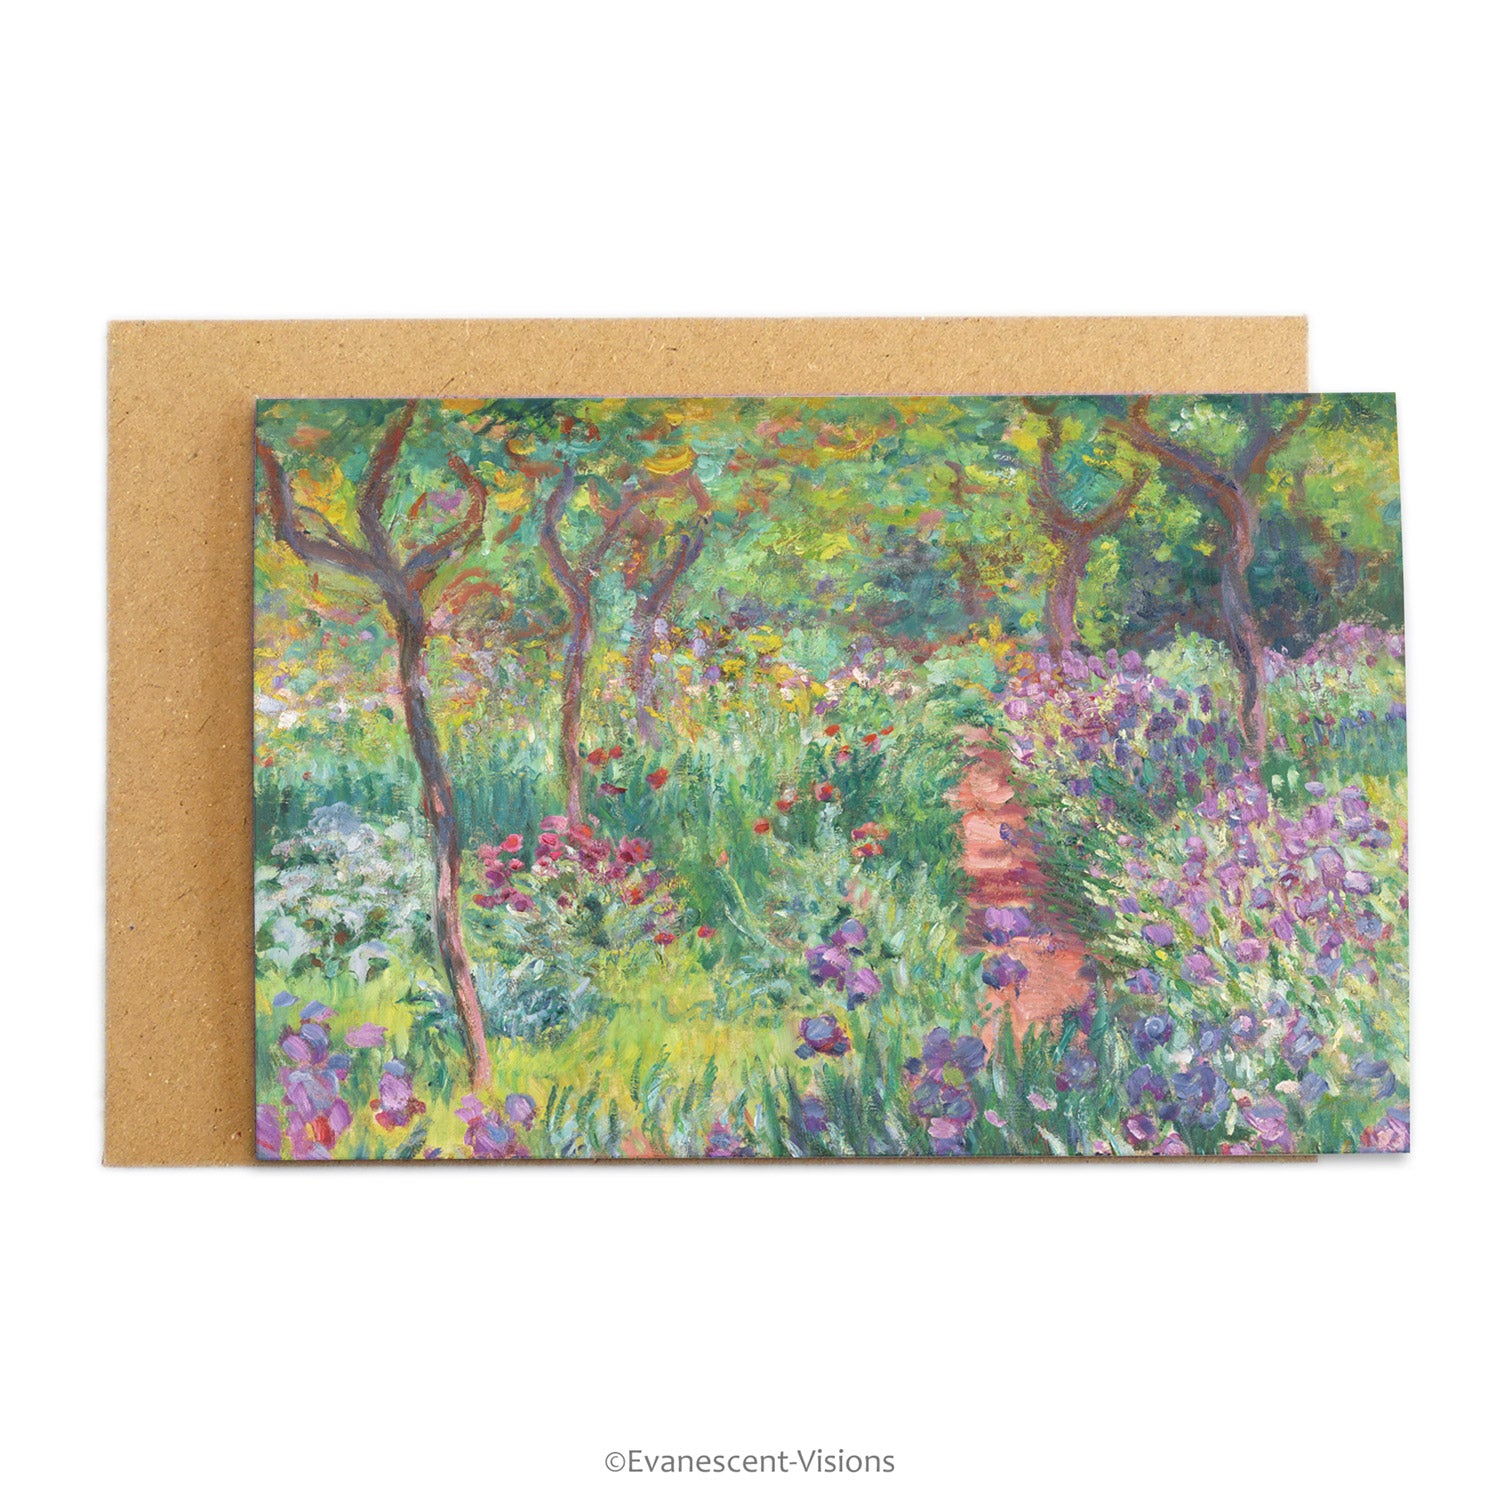 Claude Monet Artist's Garden design Fine Art Greeting Card with brown envelope